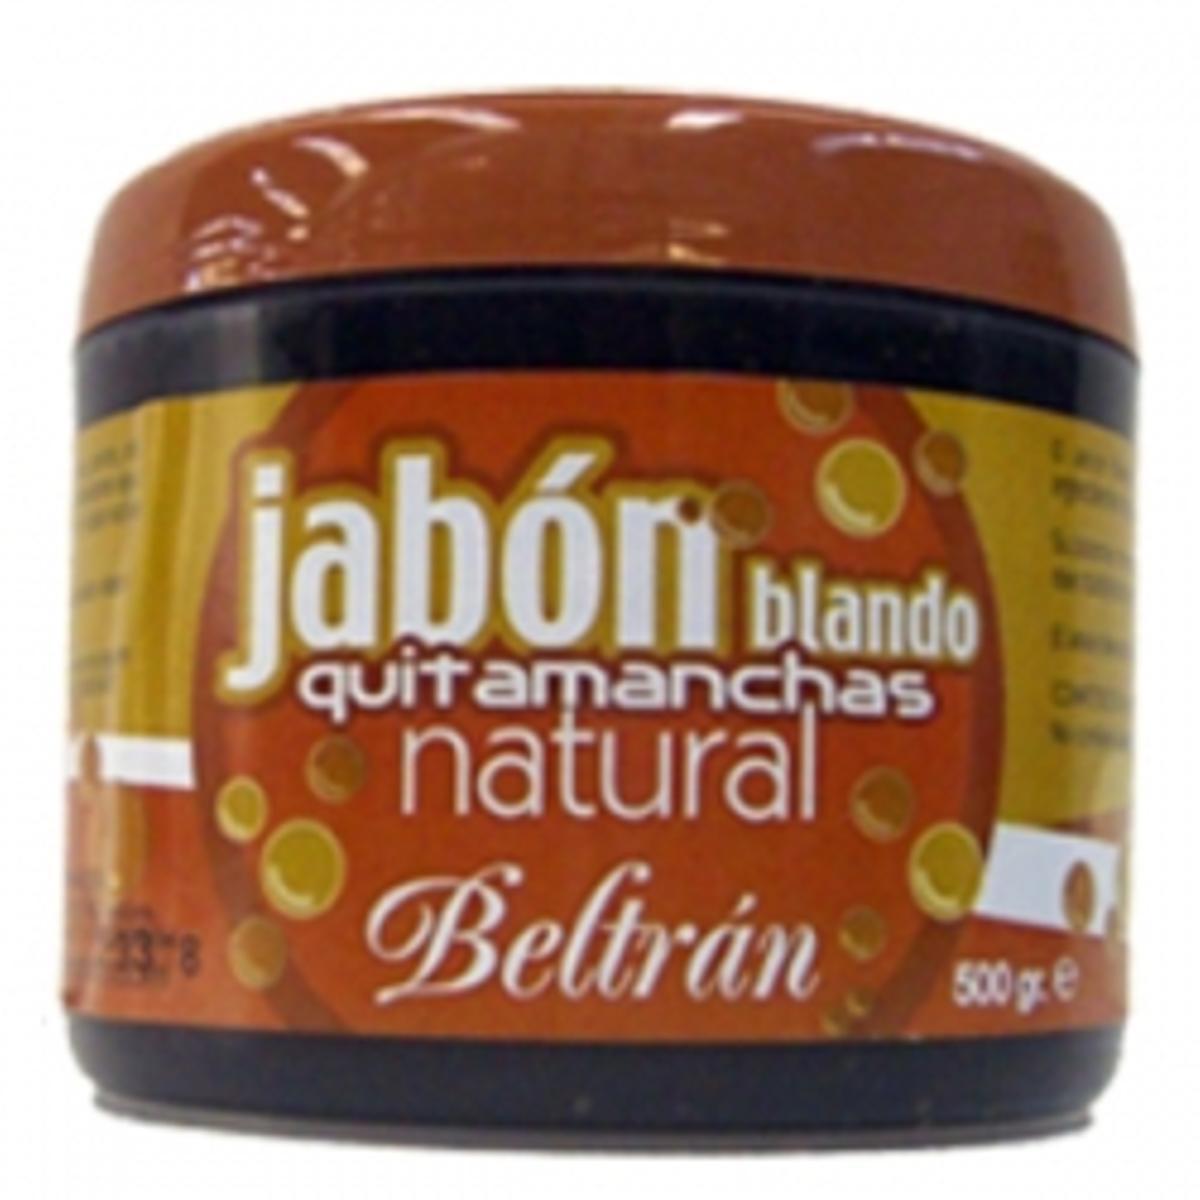 El jabón Beltrán es uno de esos productos de toda la vida que sirven para limpiar casi cualquier cosa en casa.